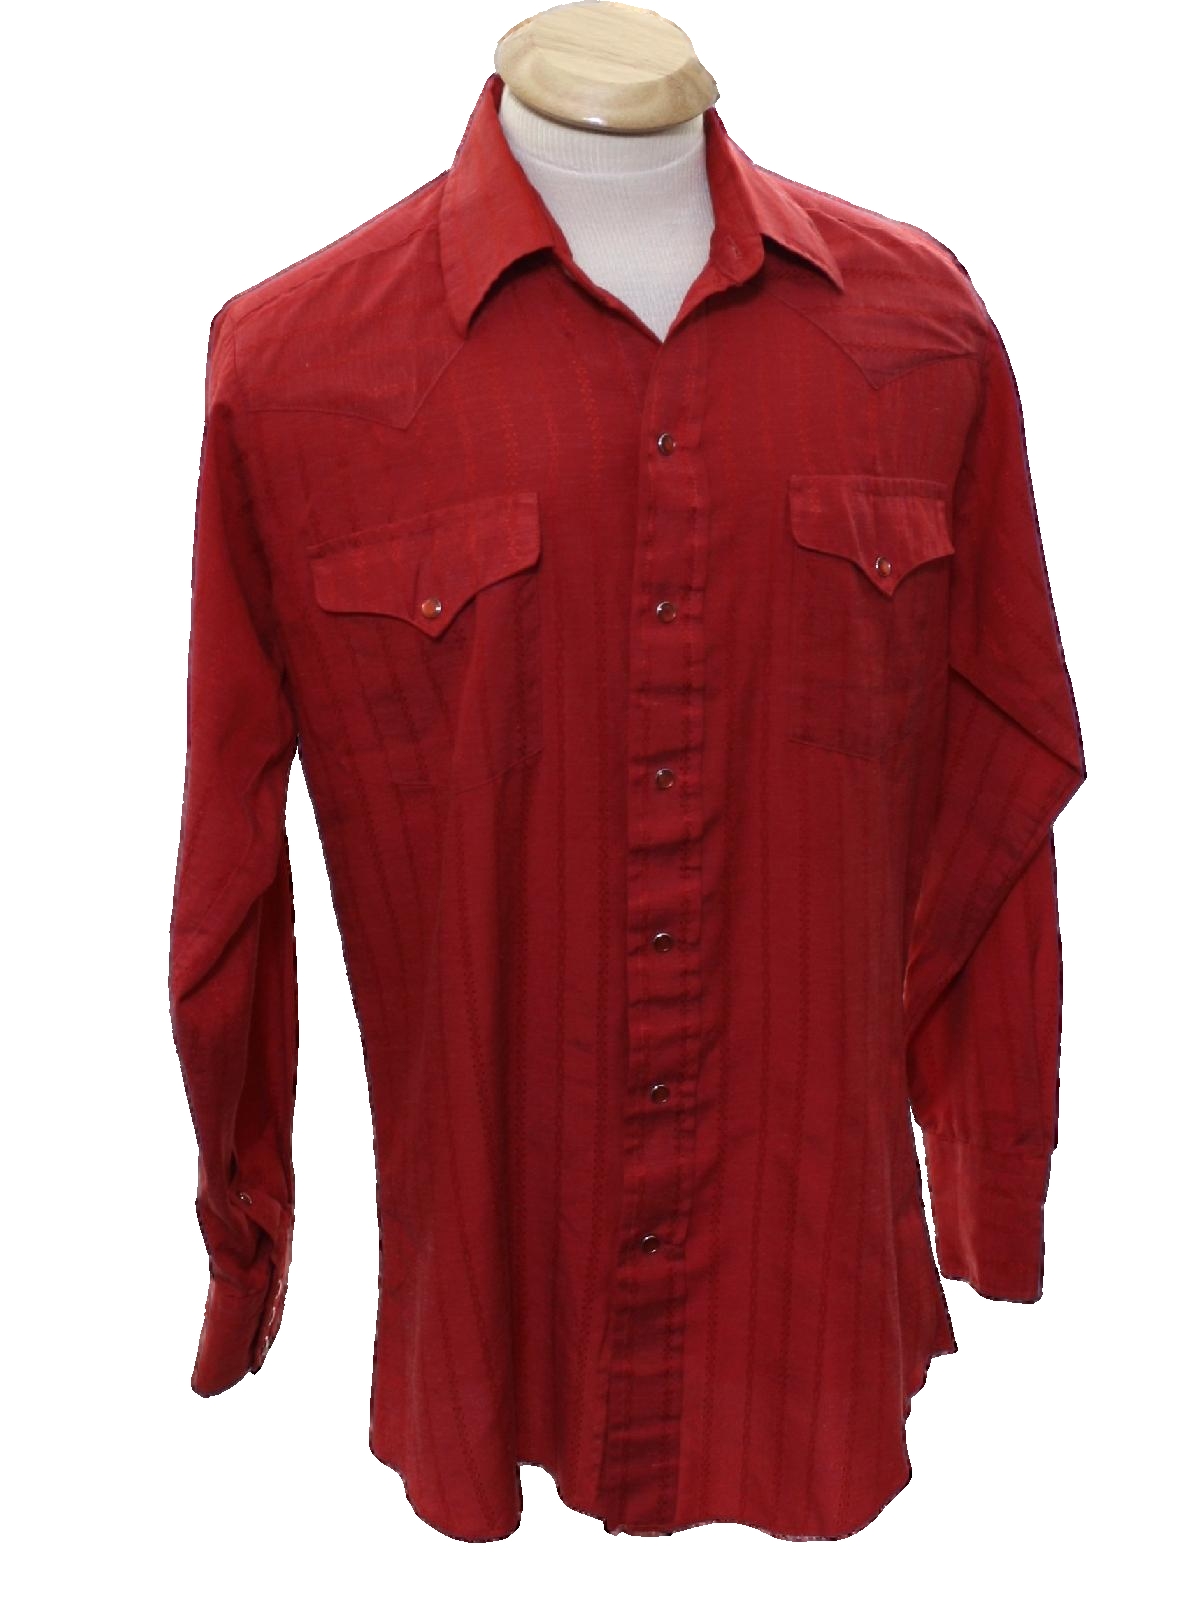 Retro 80s Western Shirt (Panhandle Slim) : 80s -Panhandle Slim- Mens ...